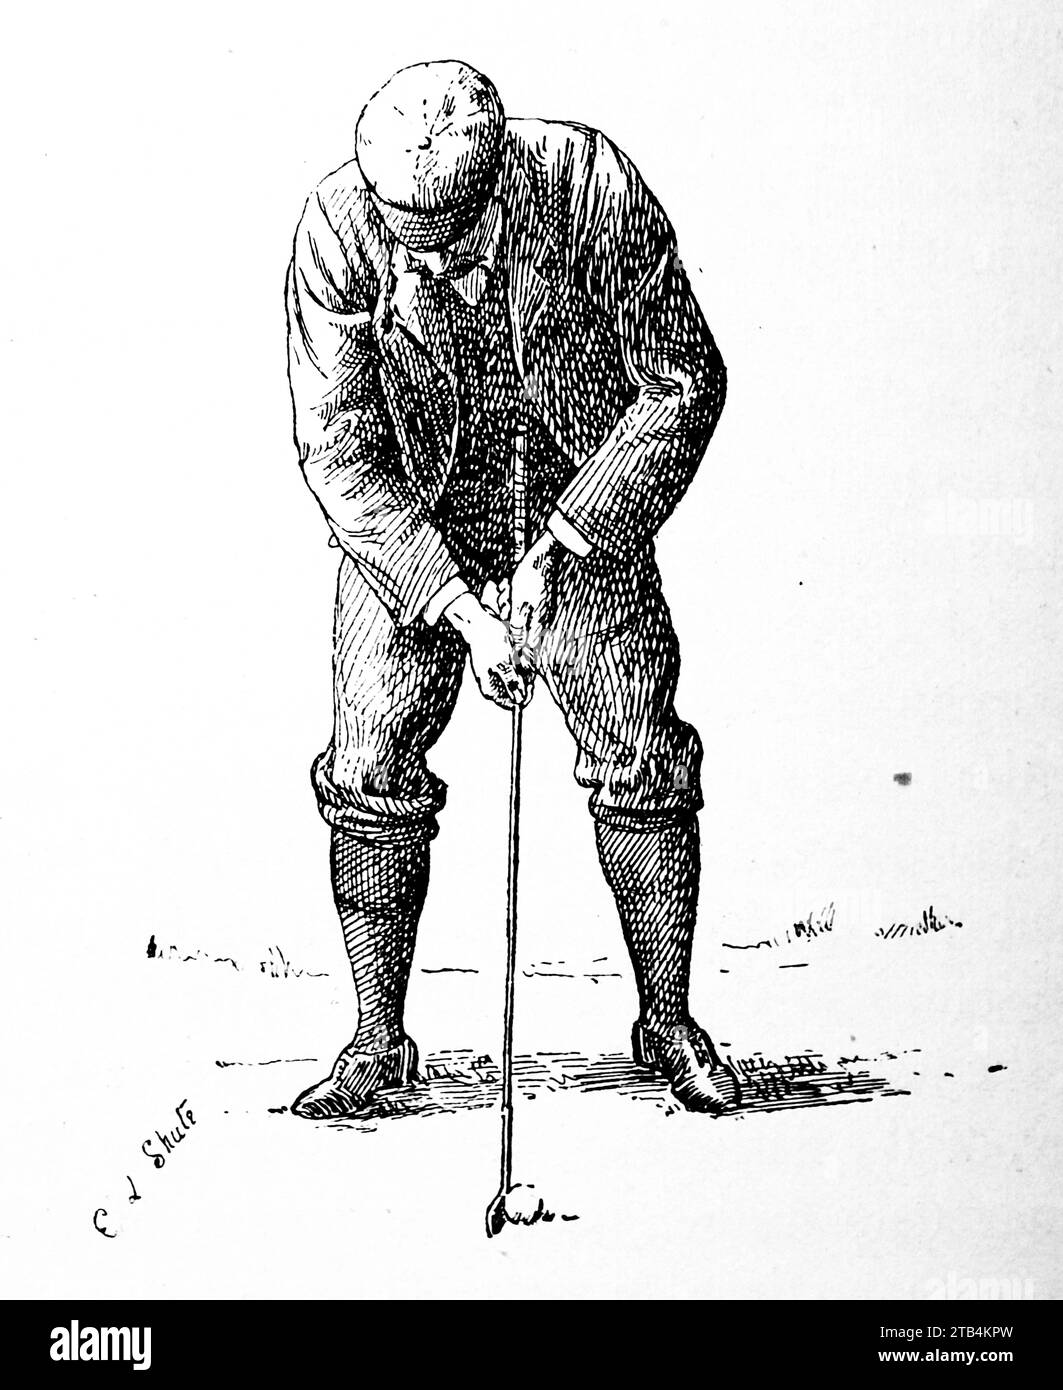 Uno stile alternativo di Putting, di E.L. Shute. Da un'illustrazione sul golf, datata dal 1889 al 1901. La storia del golf è lunga. Anche se le sue origini sono contestate, gli storici sono generalmente concordi sul fatto che quello che è conosciuto come "moderno" golf è iniziato nel Medioevo in Scozia. Fu solo dalla metà alla fine del XIX secolo che questo sport divenne più popolare in Gran Bretagna, nell'Impero britannico e poi negli Stati Uniti. Nel corso degli anni, l'umile palla da golf e il golf club sono cambiati enormemente. Foto Stock